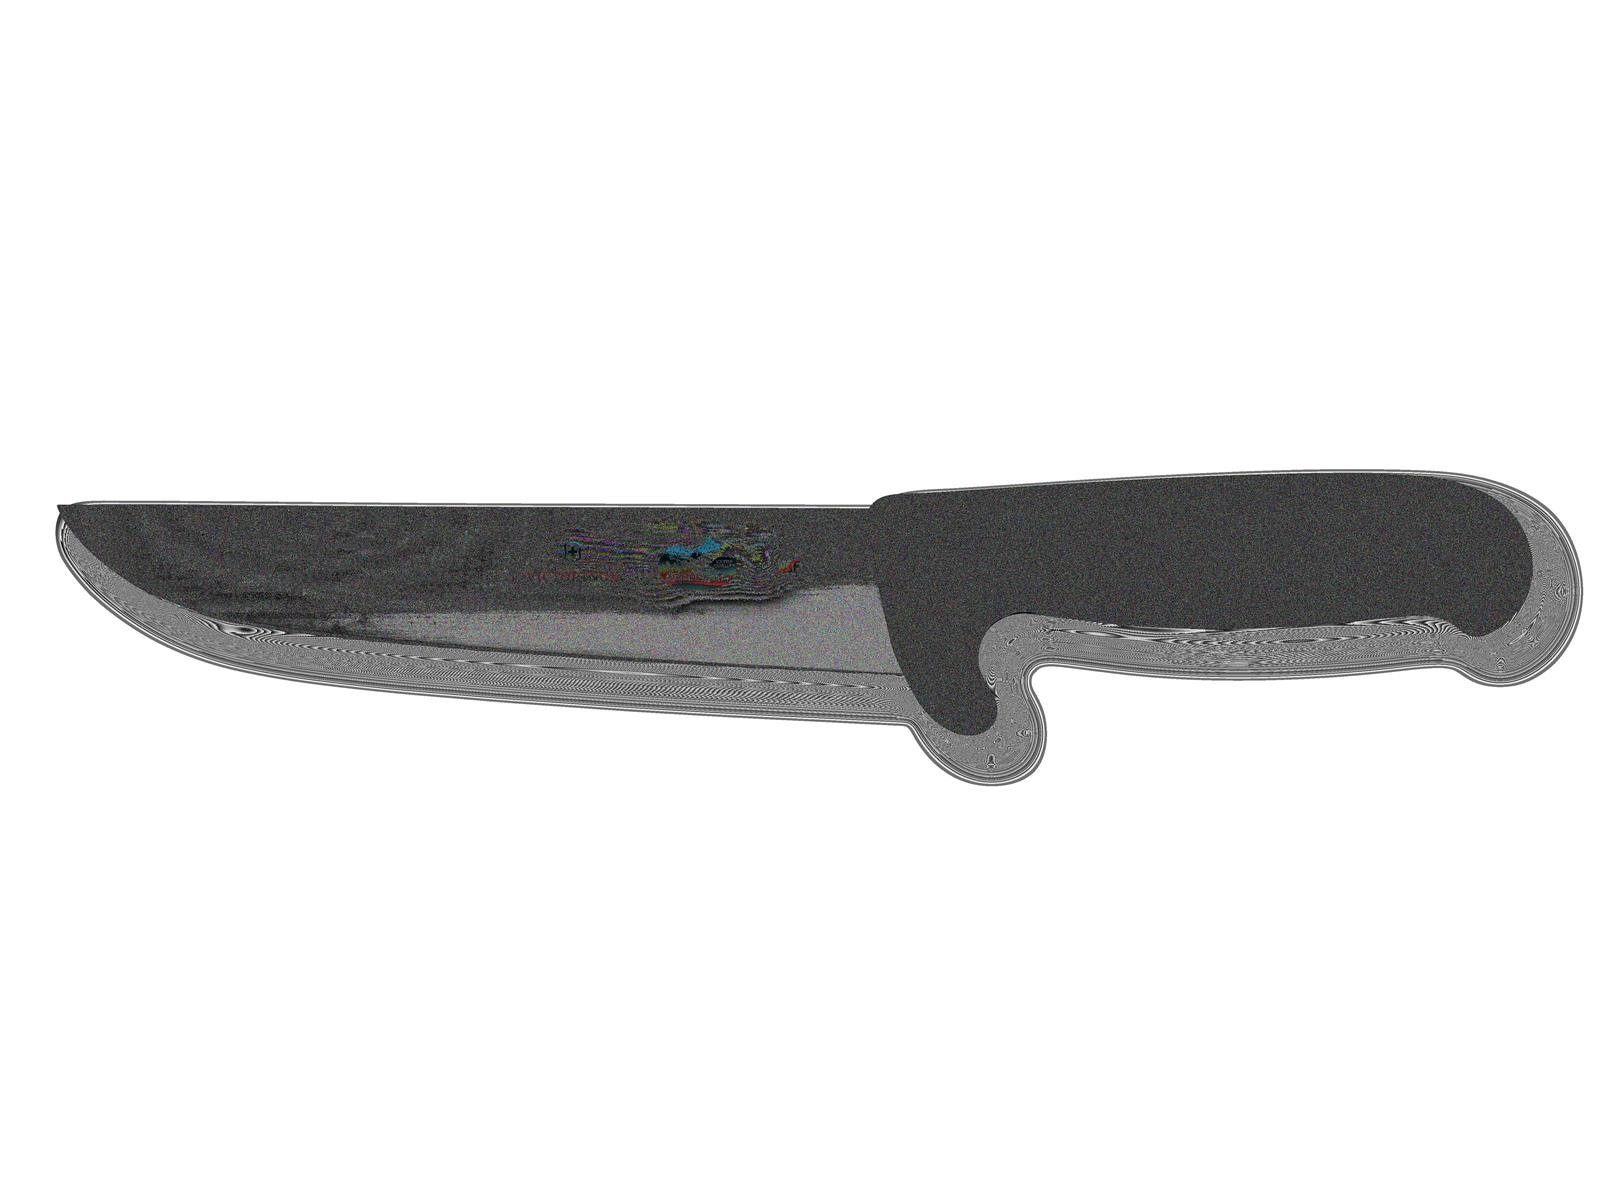 Victorinox Taschenmesser Nose Fibrox Safety Schlacht-&Bankmesser,Norm.Schl.,schwarz,18cm